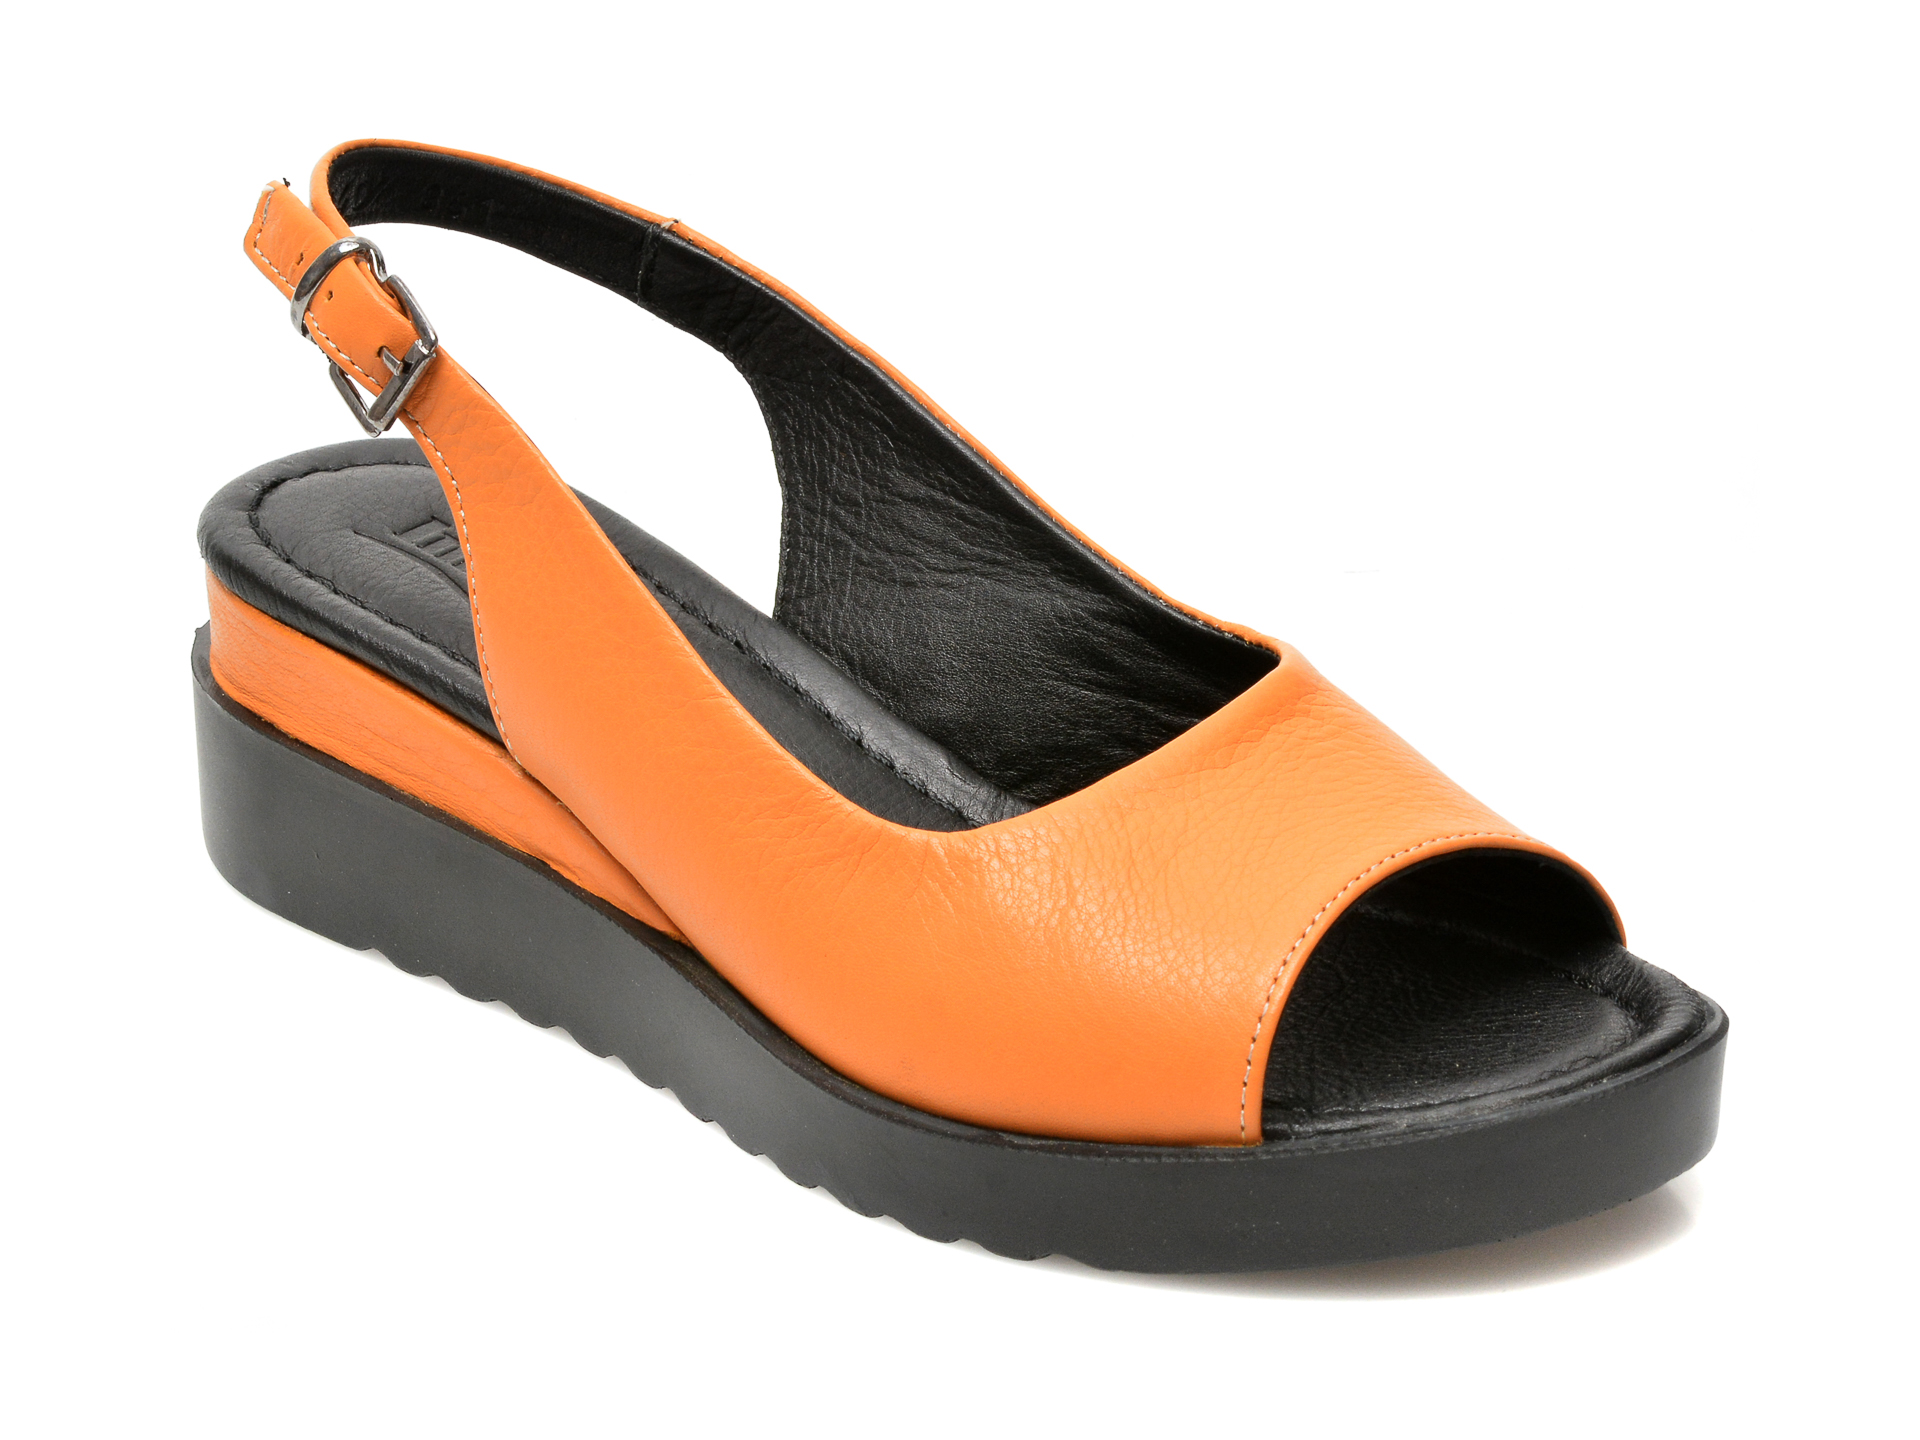 Sandale IMAGE portocalii, 2740, din piele naturala Image imagine 2022 13clothing.ro